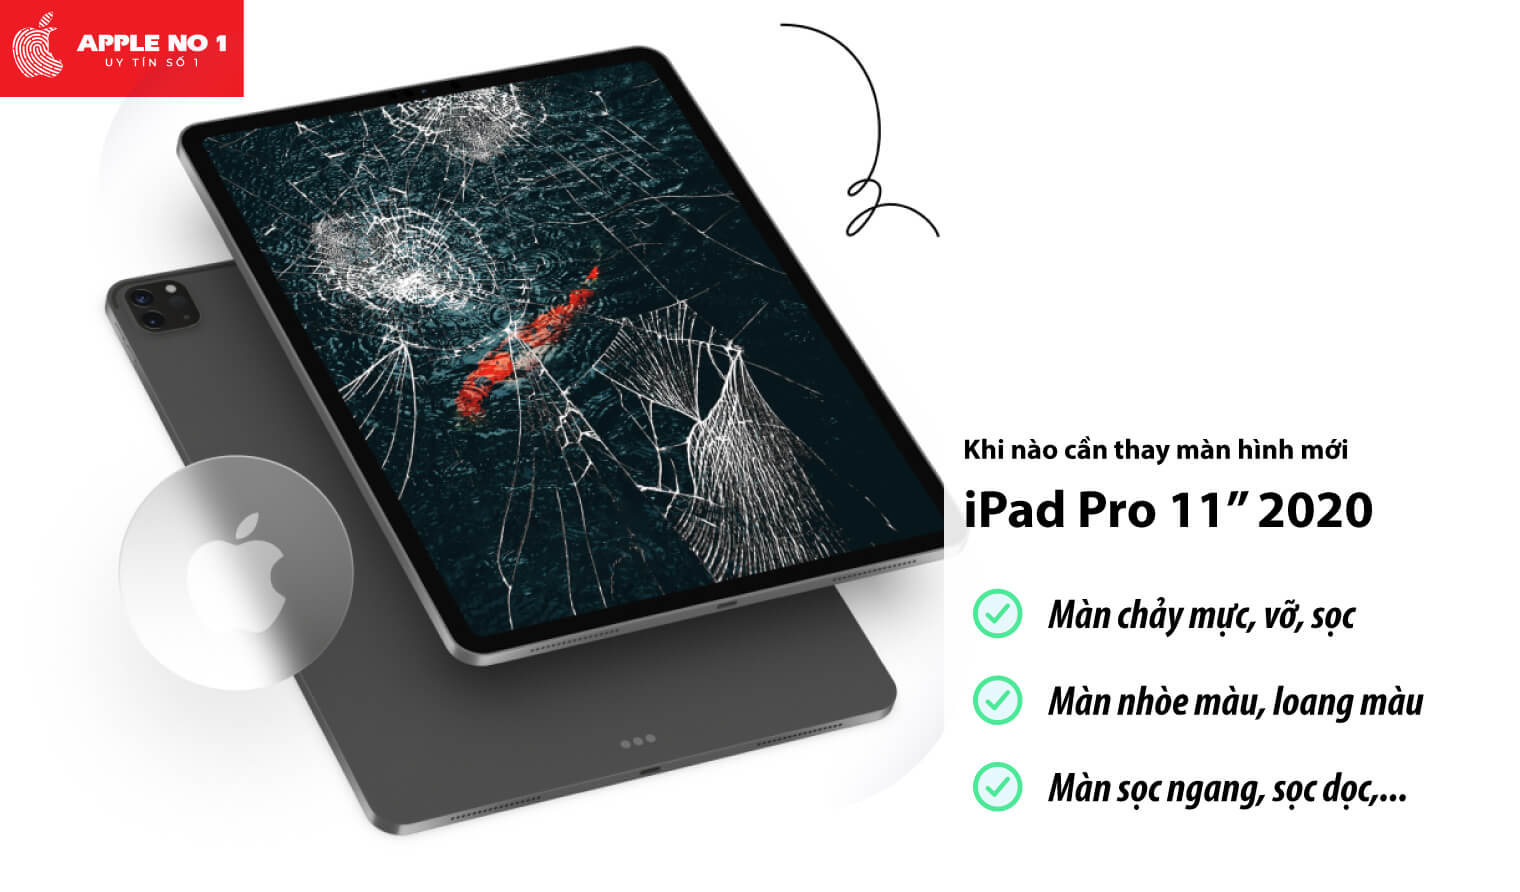 Thay màn hình iPad Pro 11 inch 2020 khi nào?